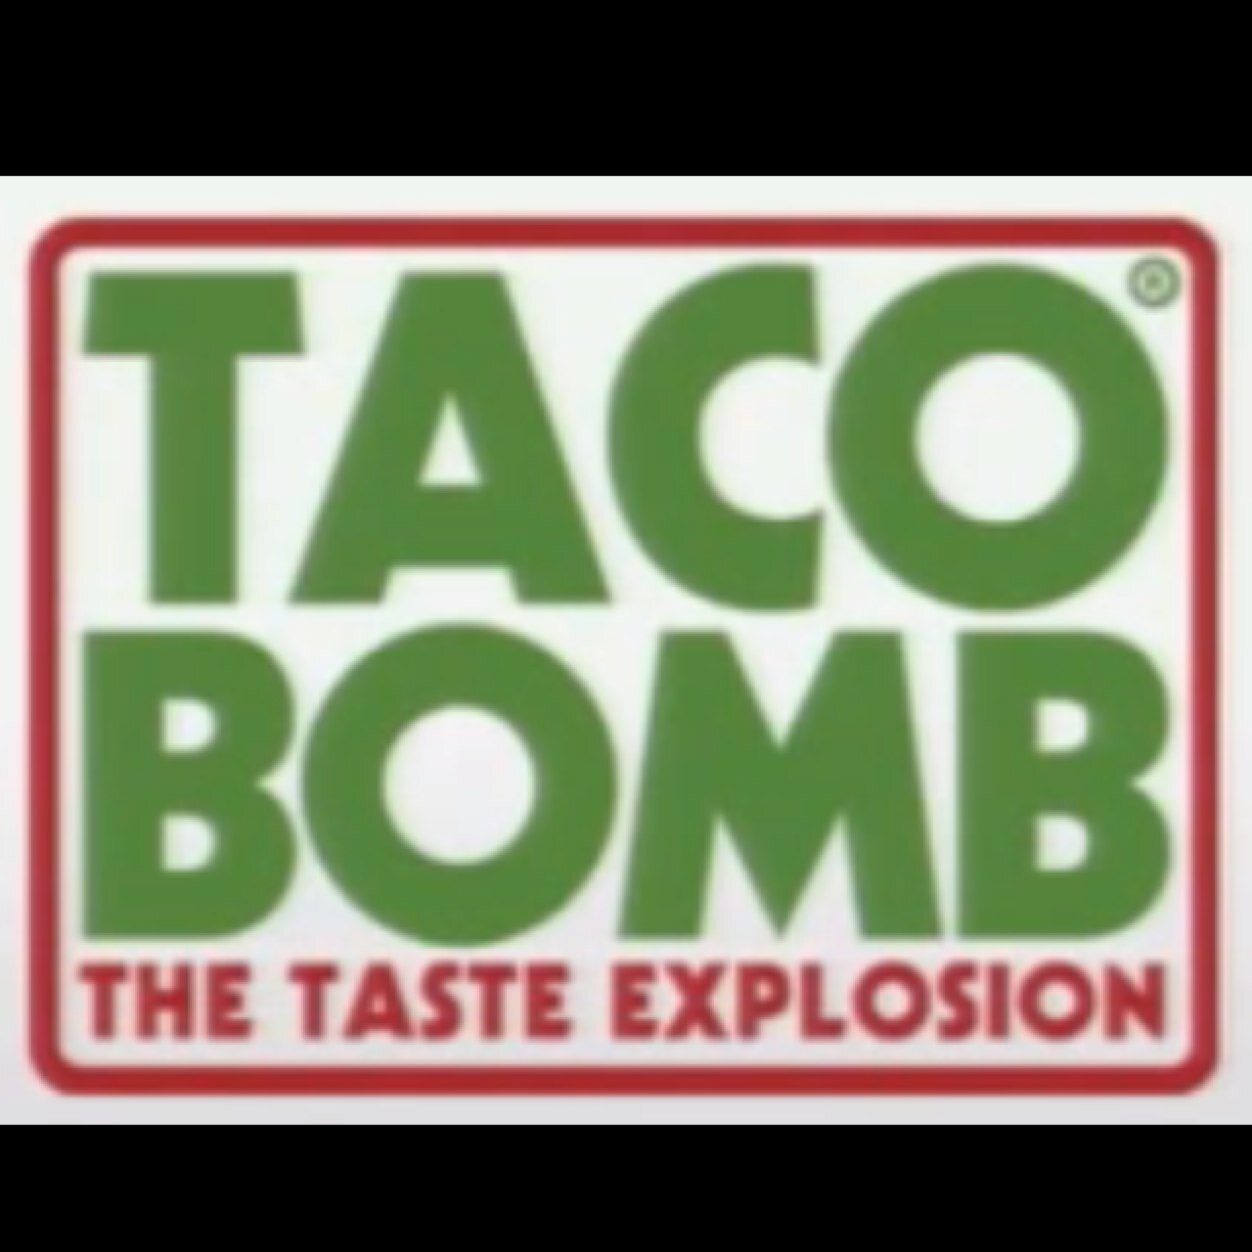 The taste explosion • #GTA5